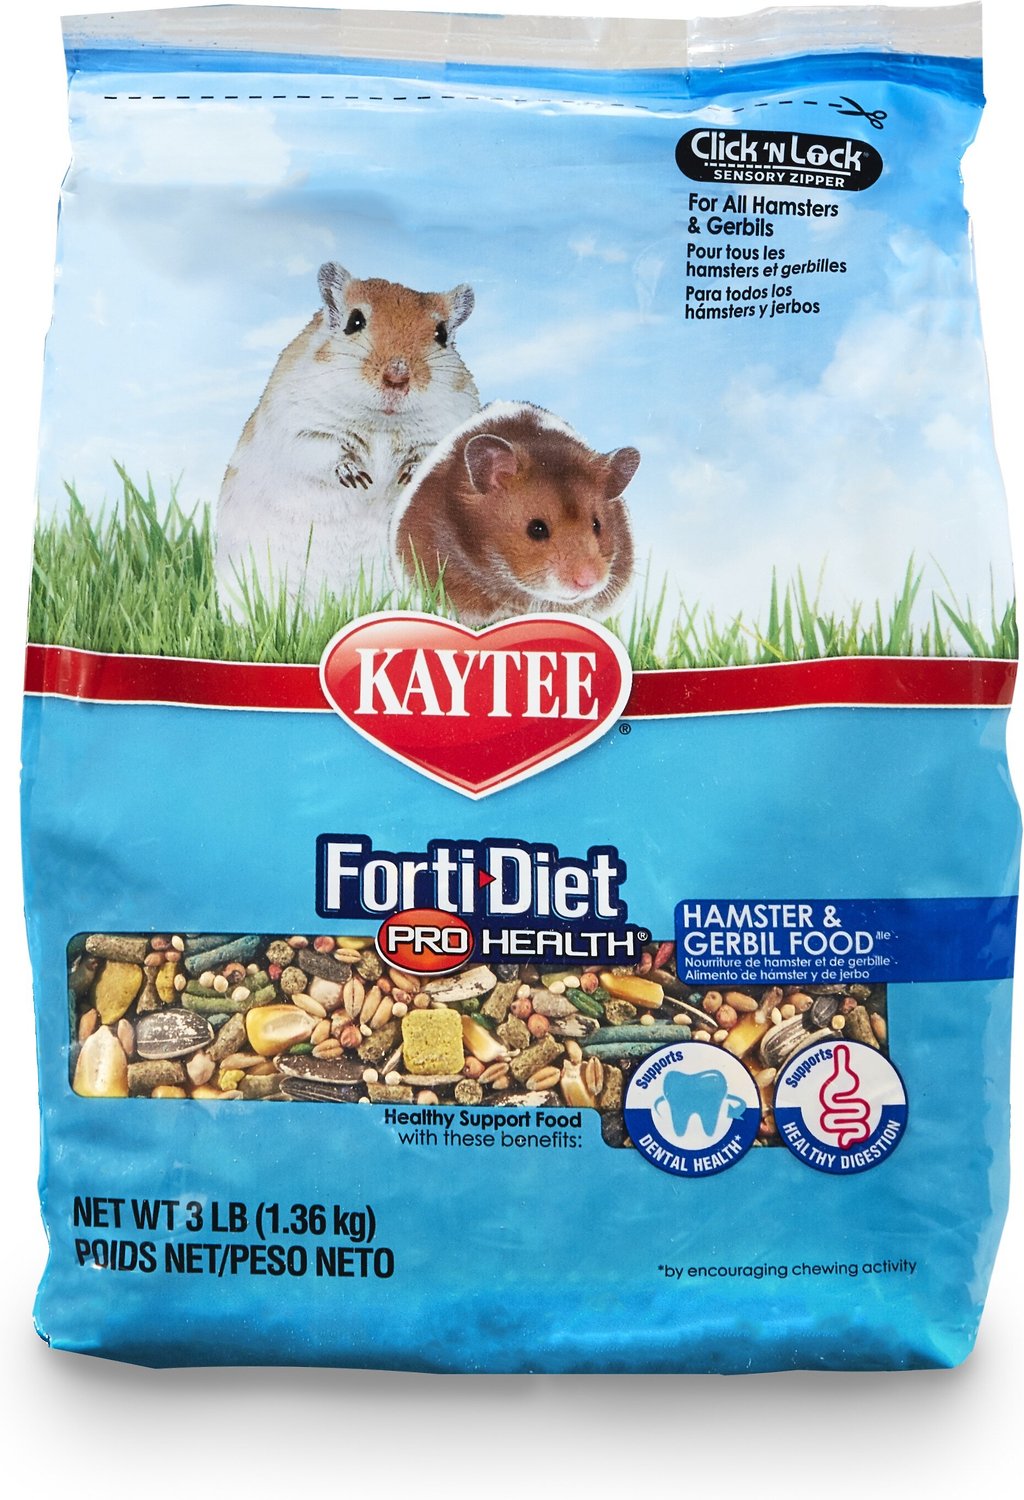 5. Kaytee Forti-Diet Pro-Health Hamster Food